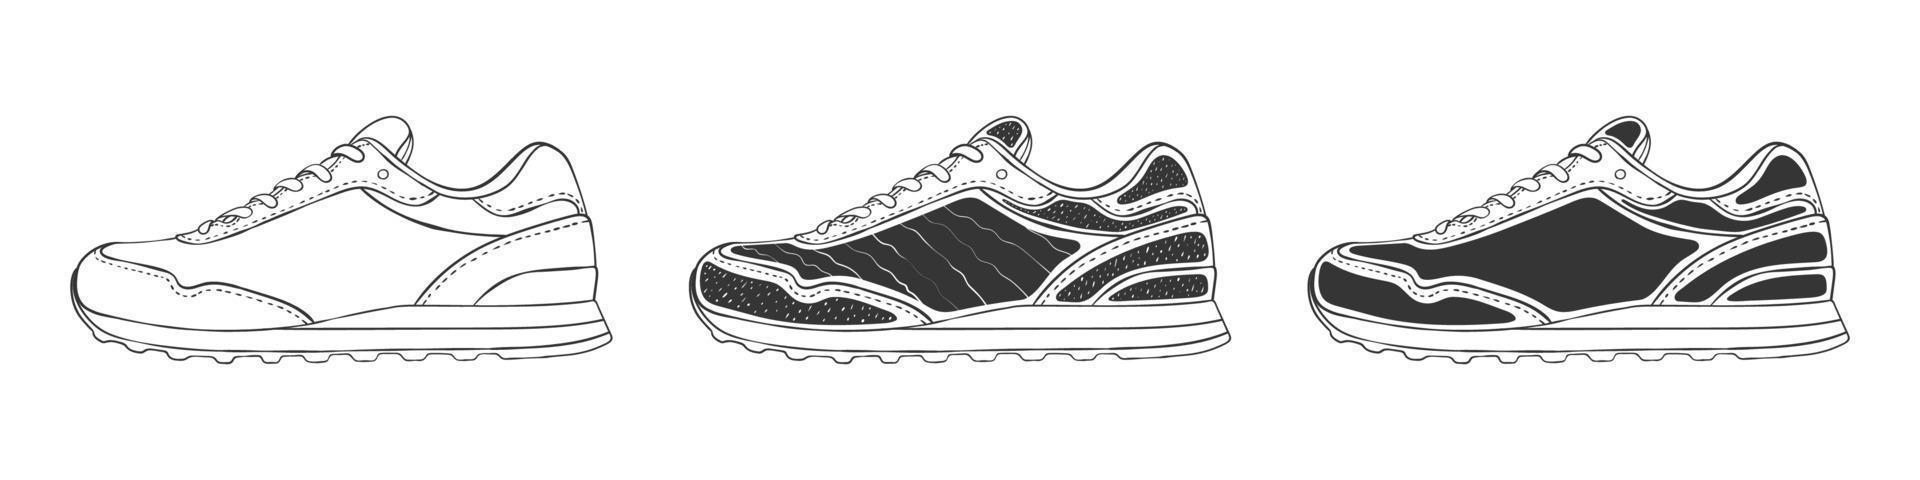 zapatillas de deporte de hombre o mujer. zapatillas modernas. zapatillas de deporte dibujadas a mano. imagen vectorial vector